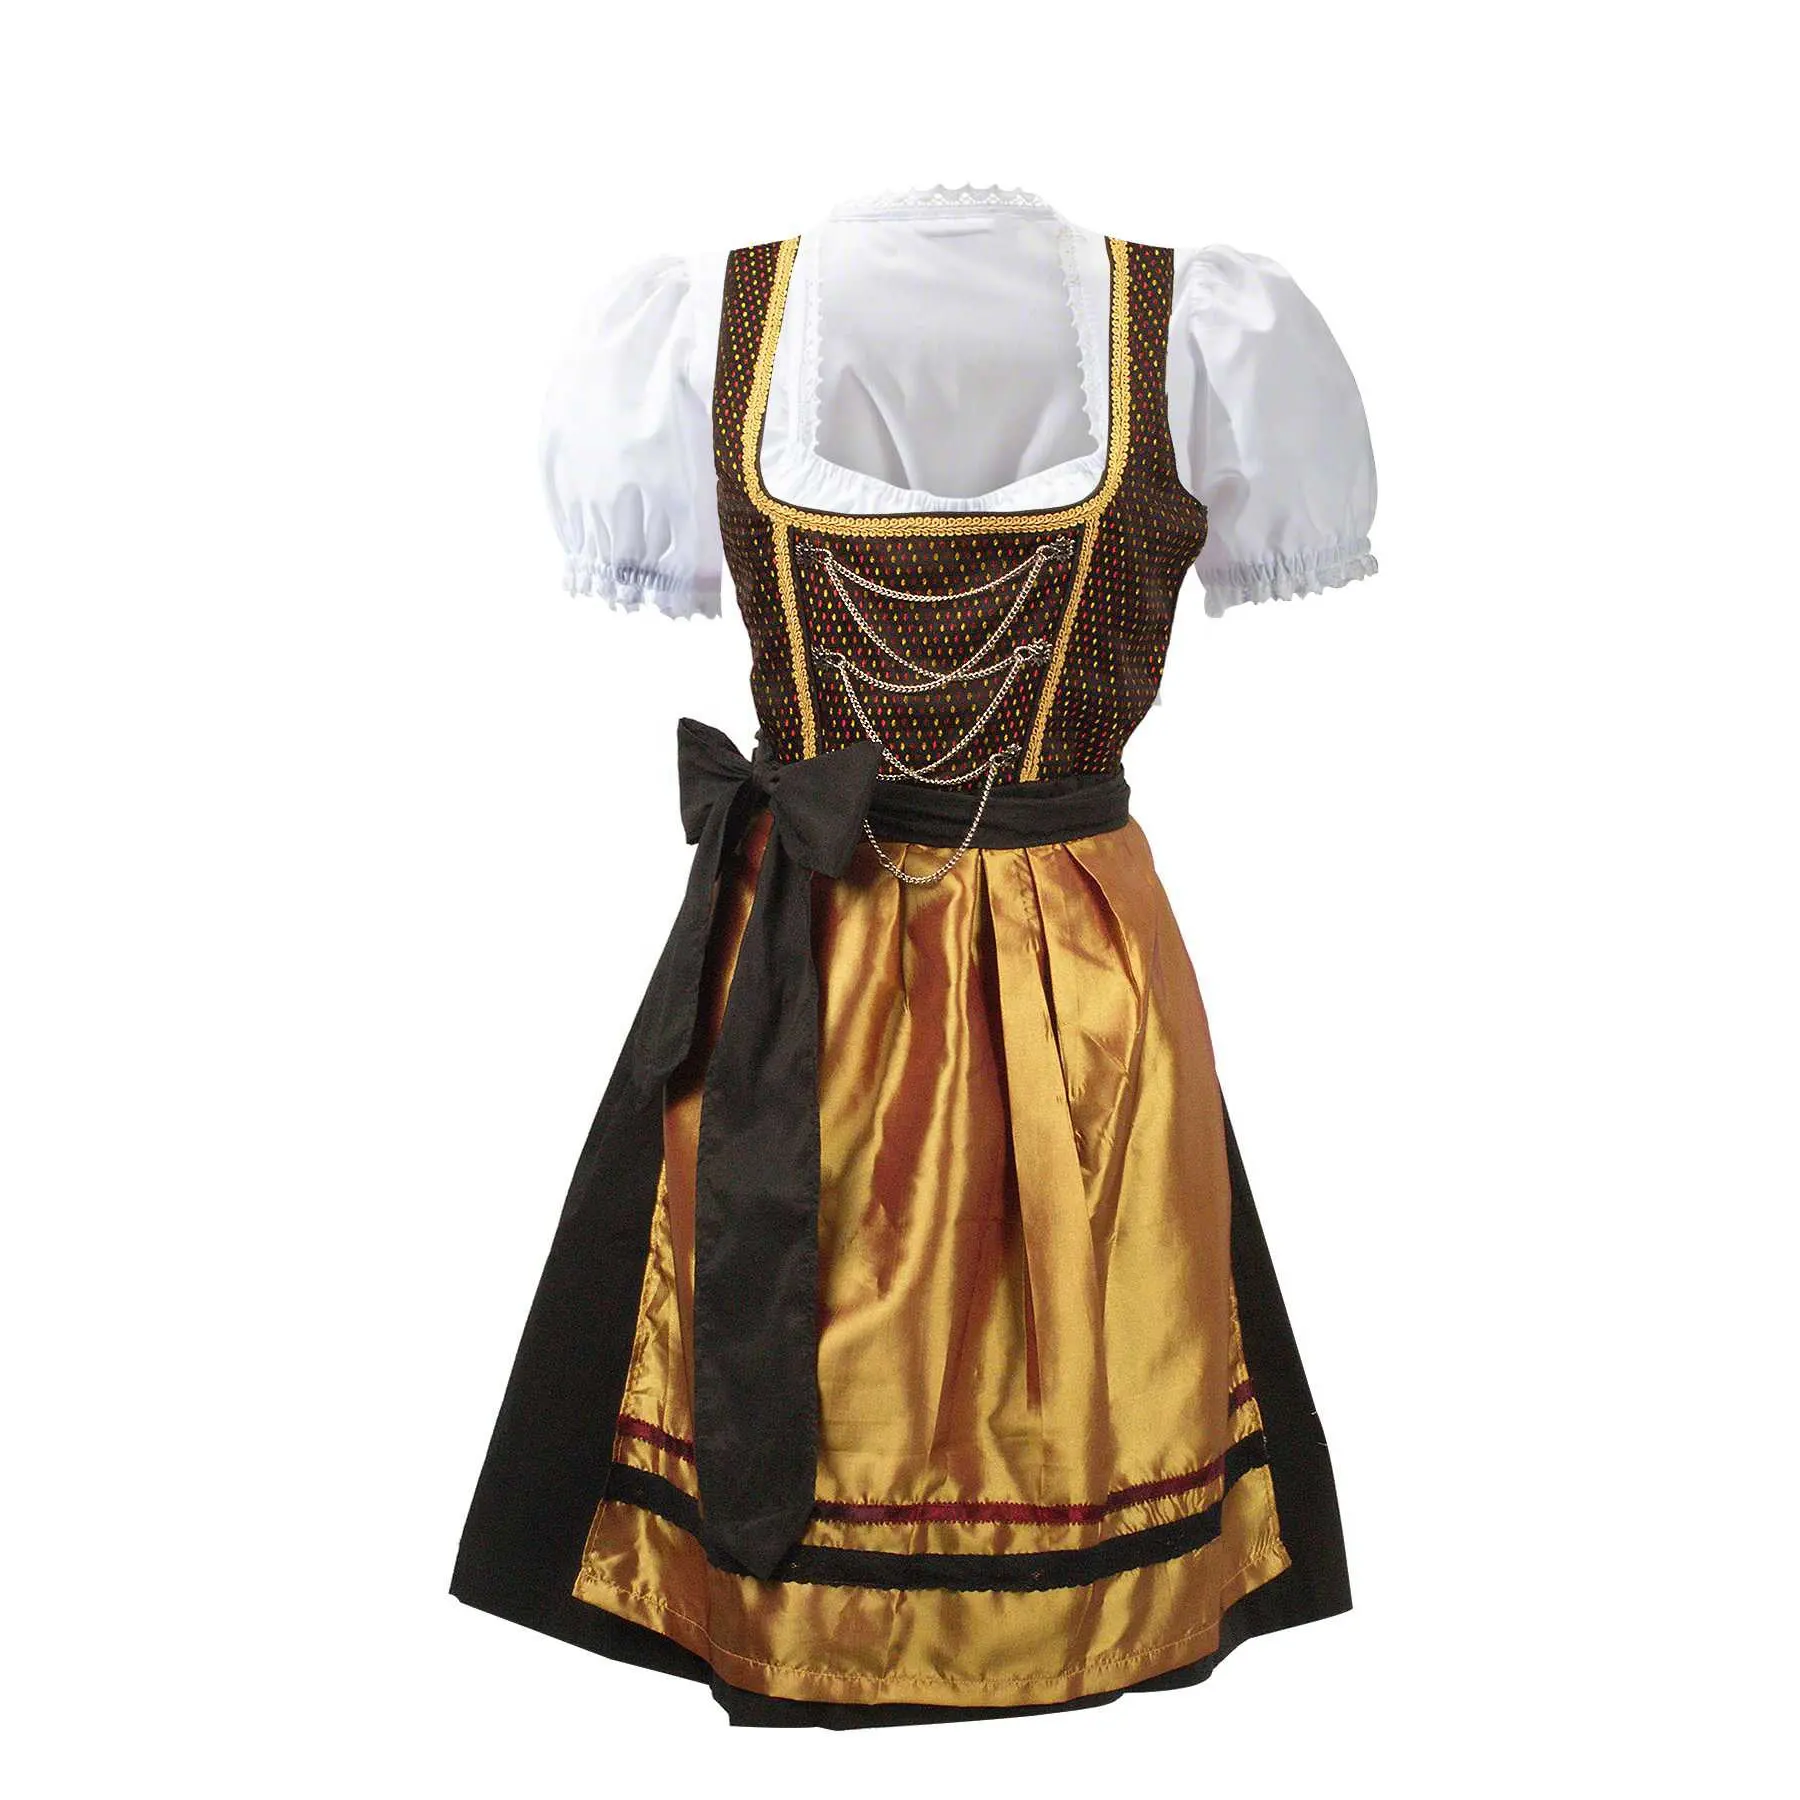 Le donne bavaresi indossano pantaloncini da donna bavaresi di alta qualità vestono Oktoberfest Mini Dirndl prezzo all'ingrosso a basso costo prezzo più basso pri